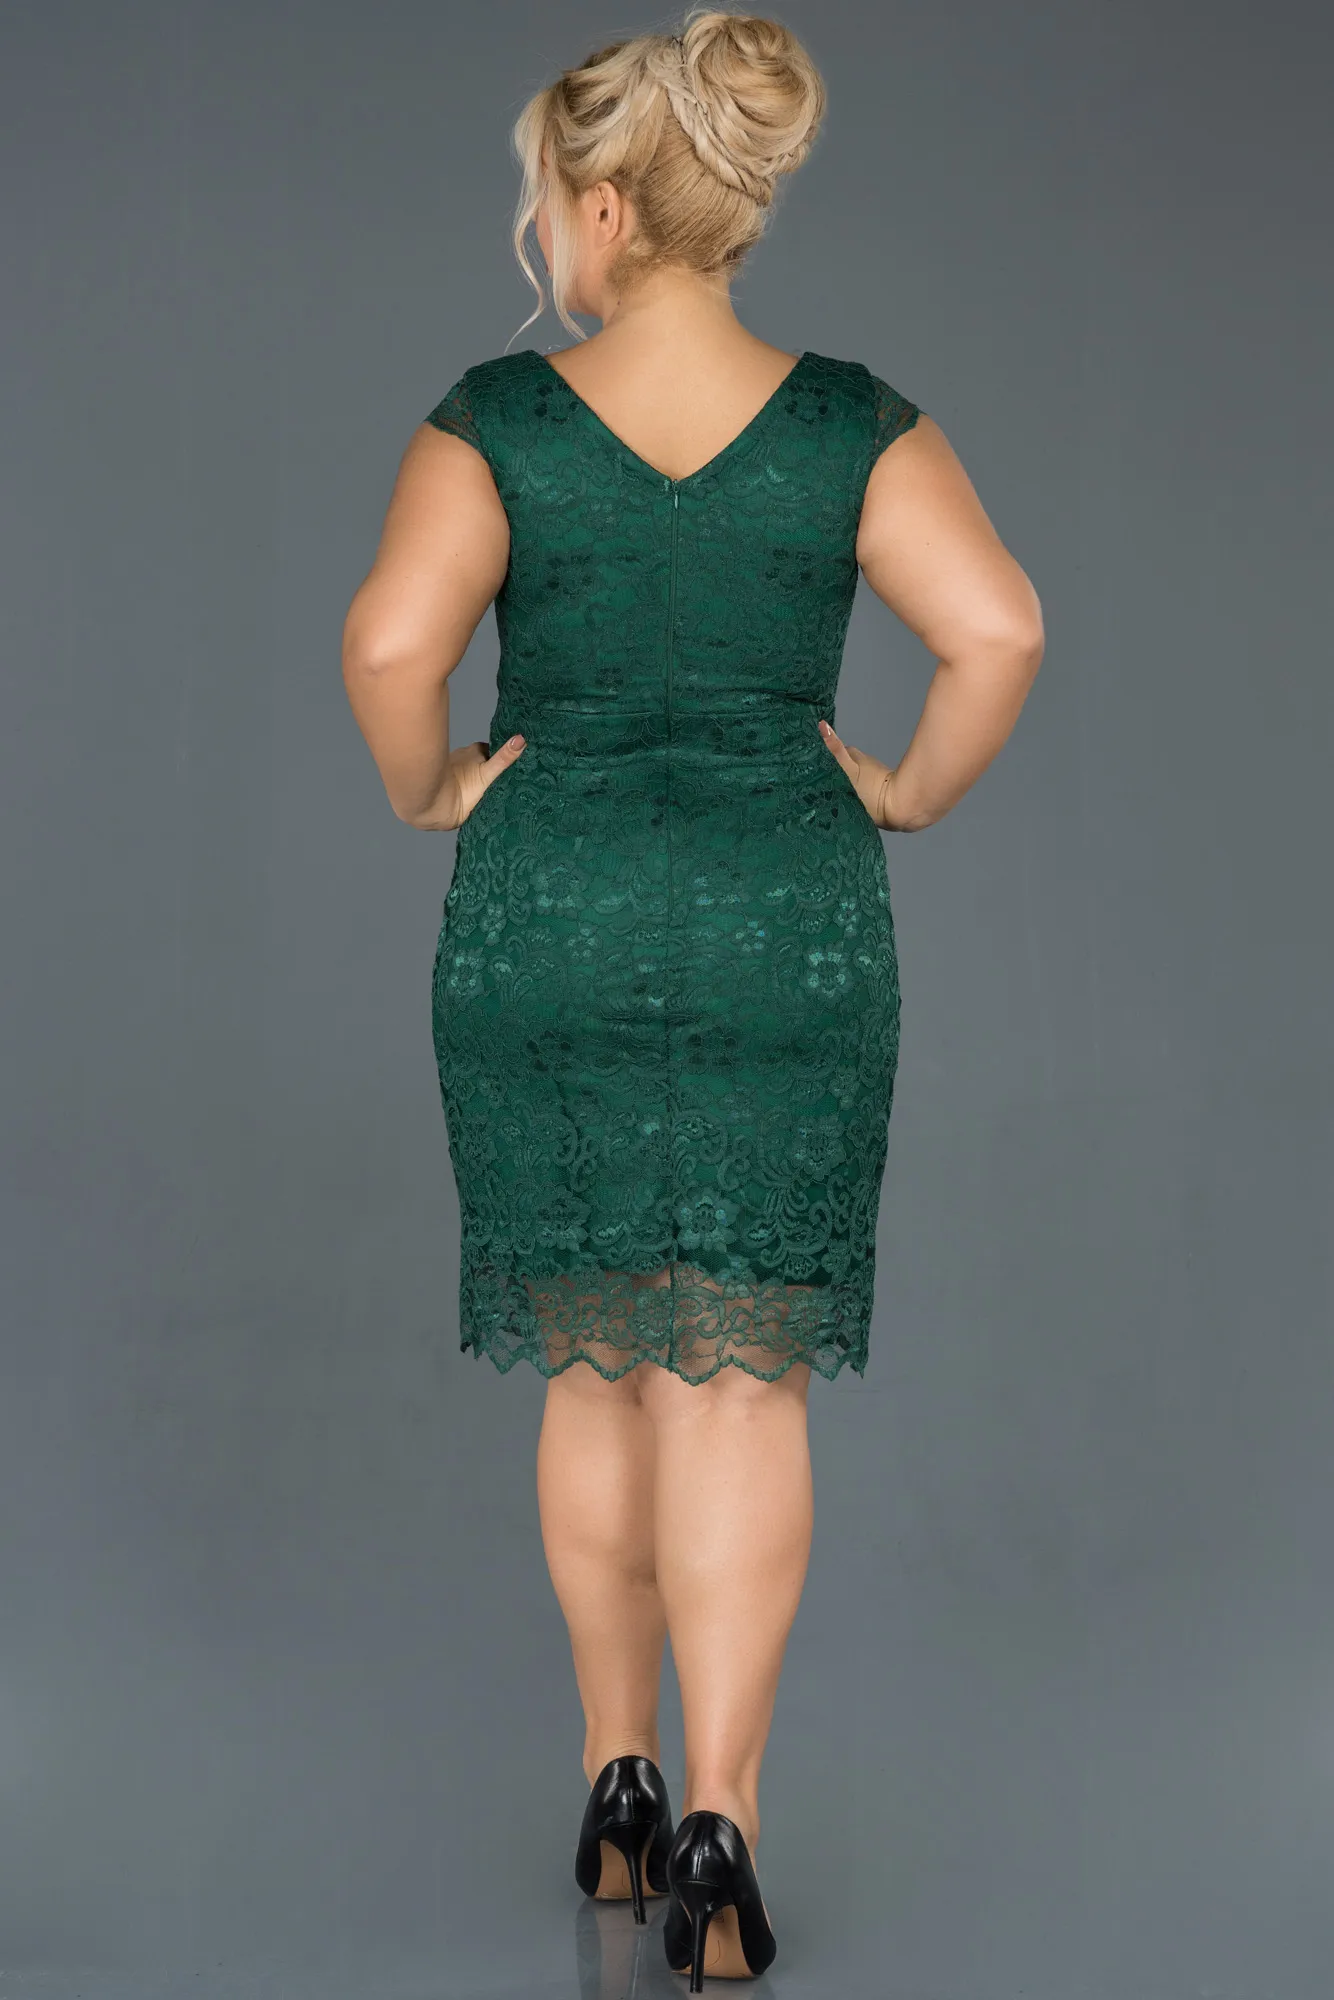 Emerald Green-Short Oversized Evening Dress ABK010